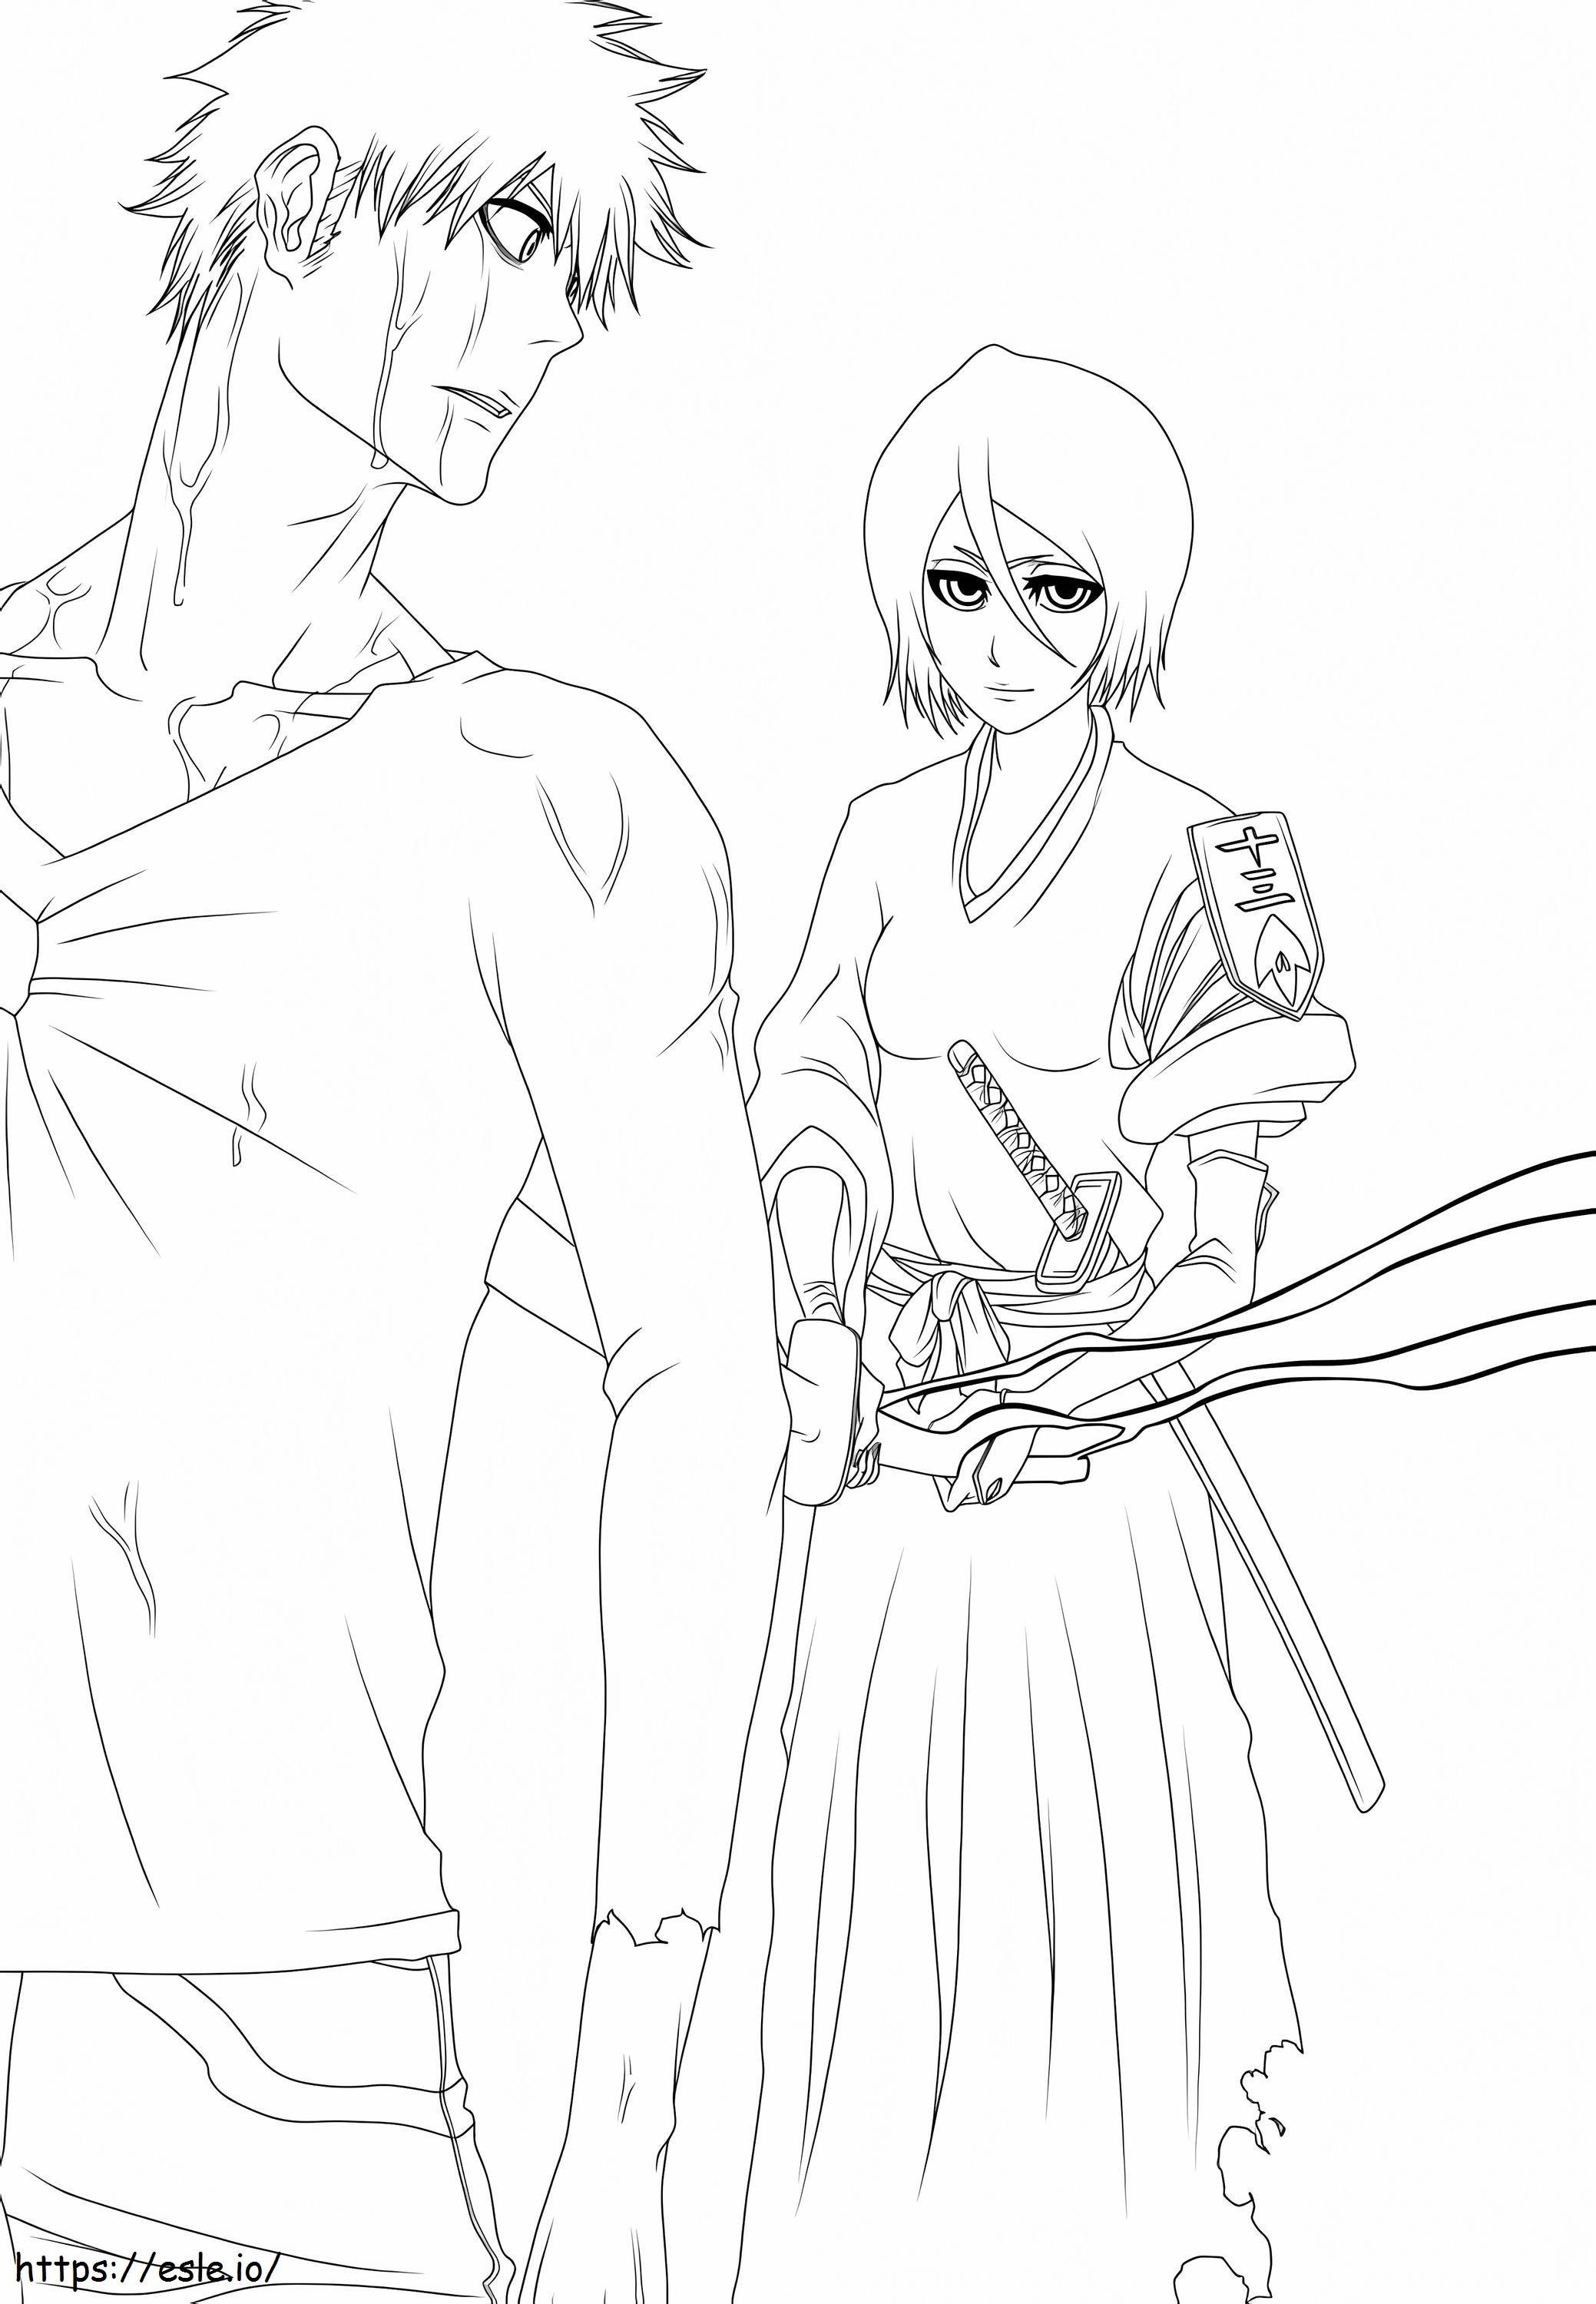 Ichigo ve Rukia boyama